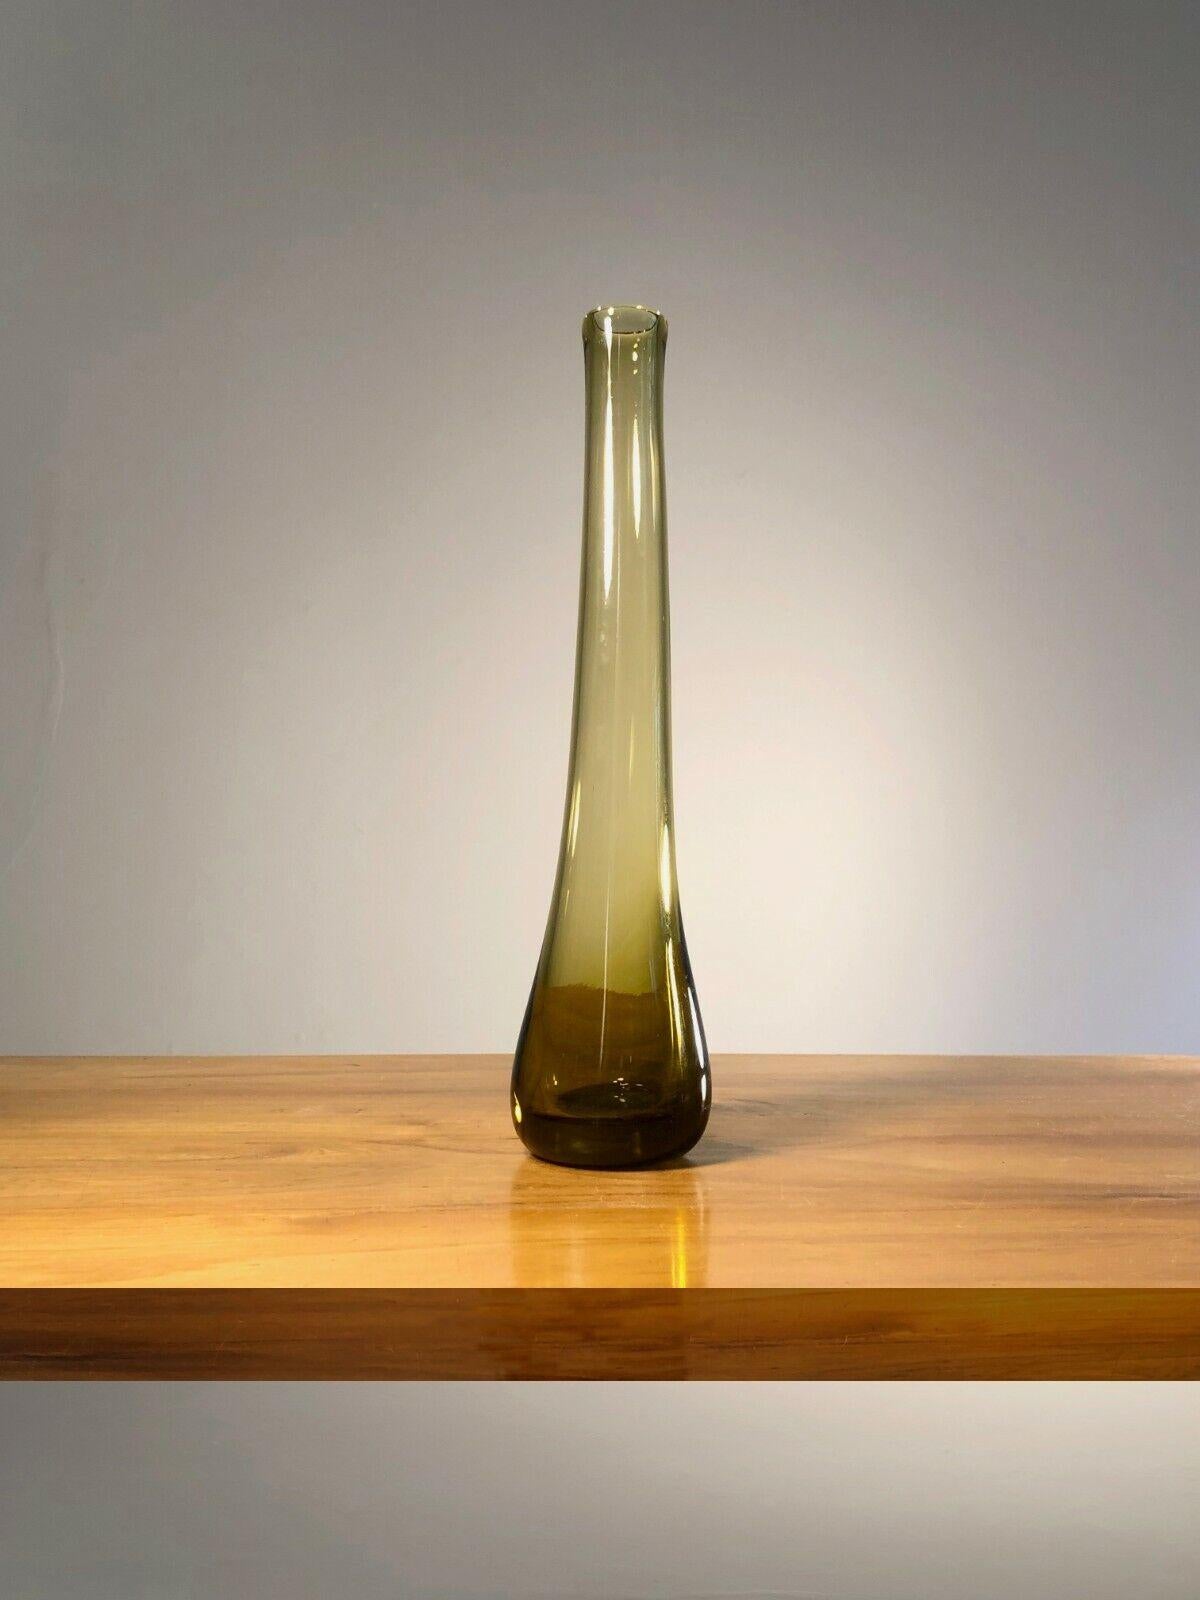 Eine elegante und große Soliflores Vase, Modernist, Free-Form, in Braunglas geblasen, von Claude Morin, signiert Morin Dieulefit, unter dem Sockel... Frankreich 1970.